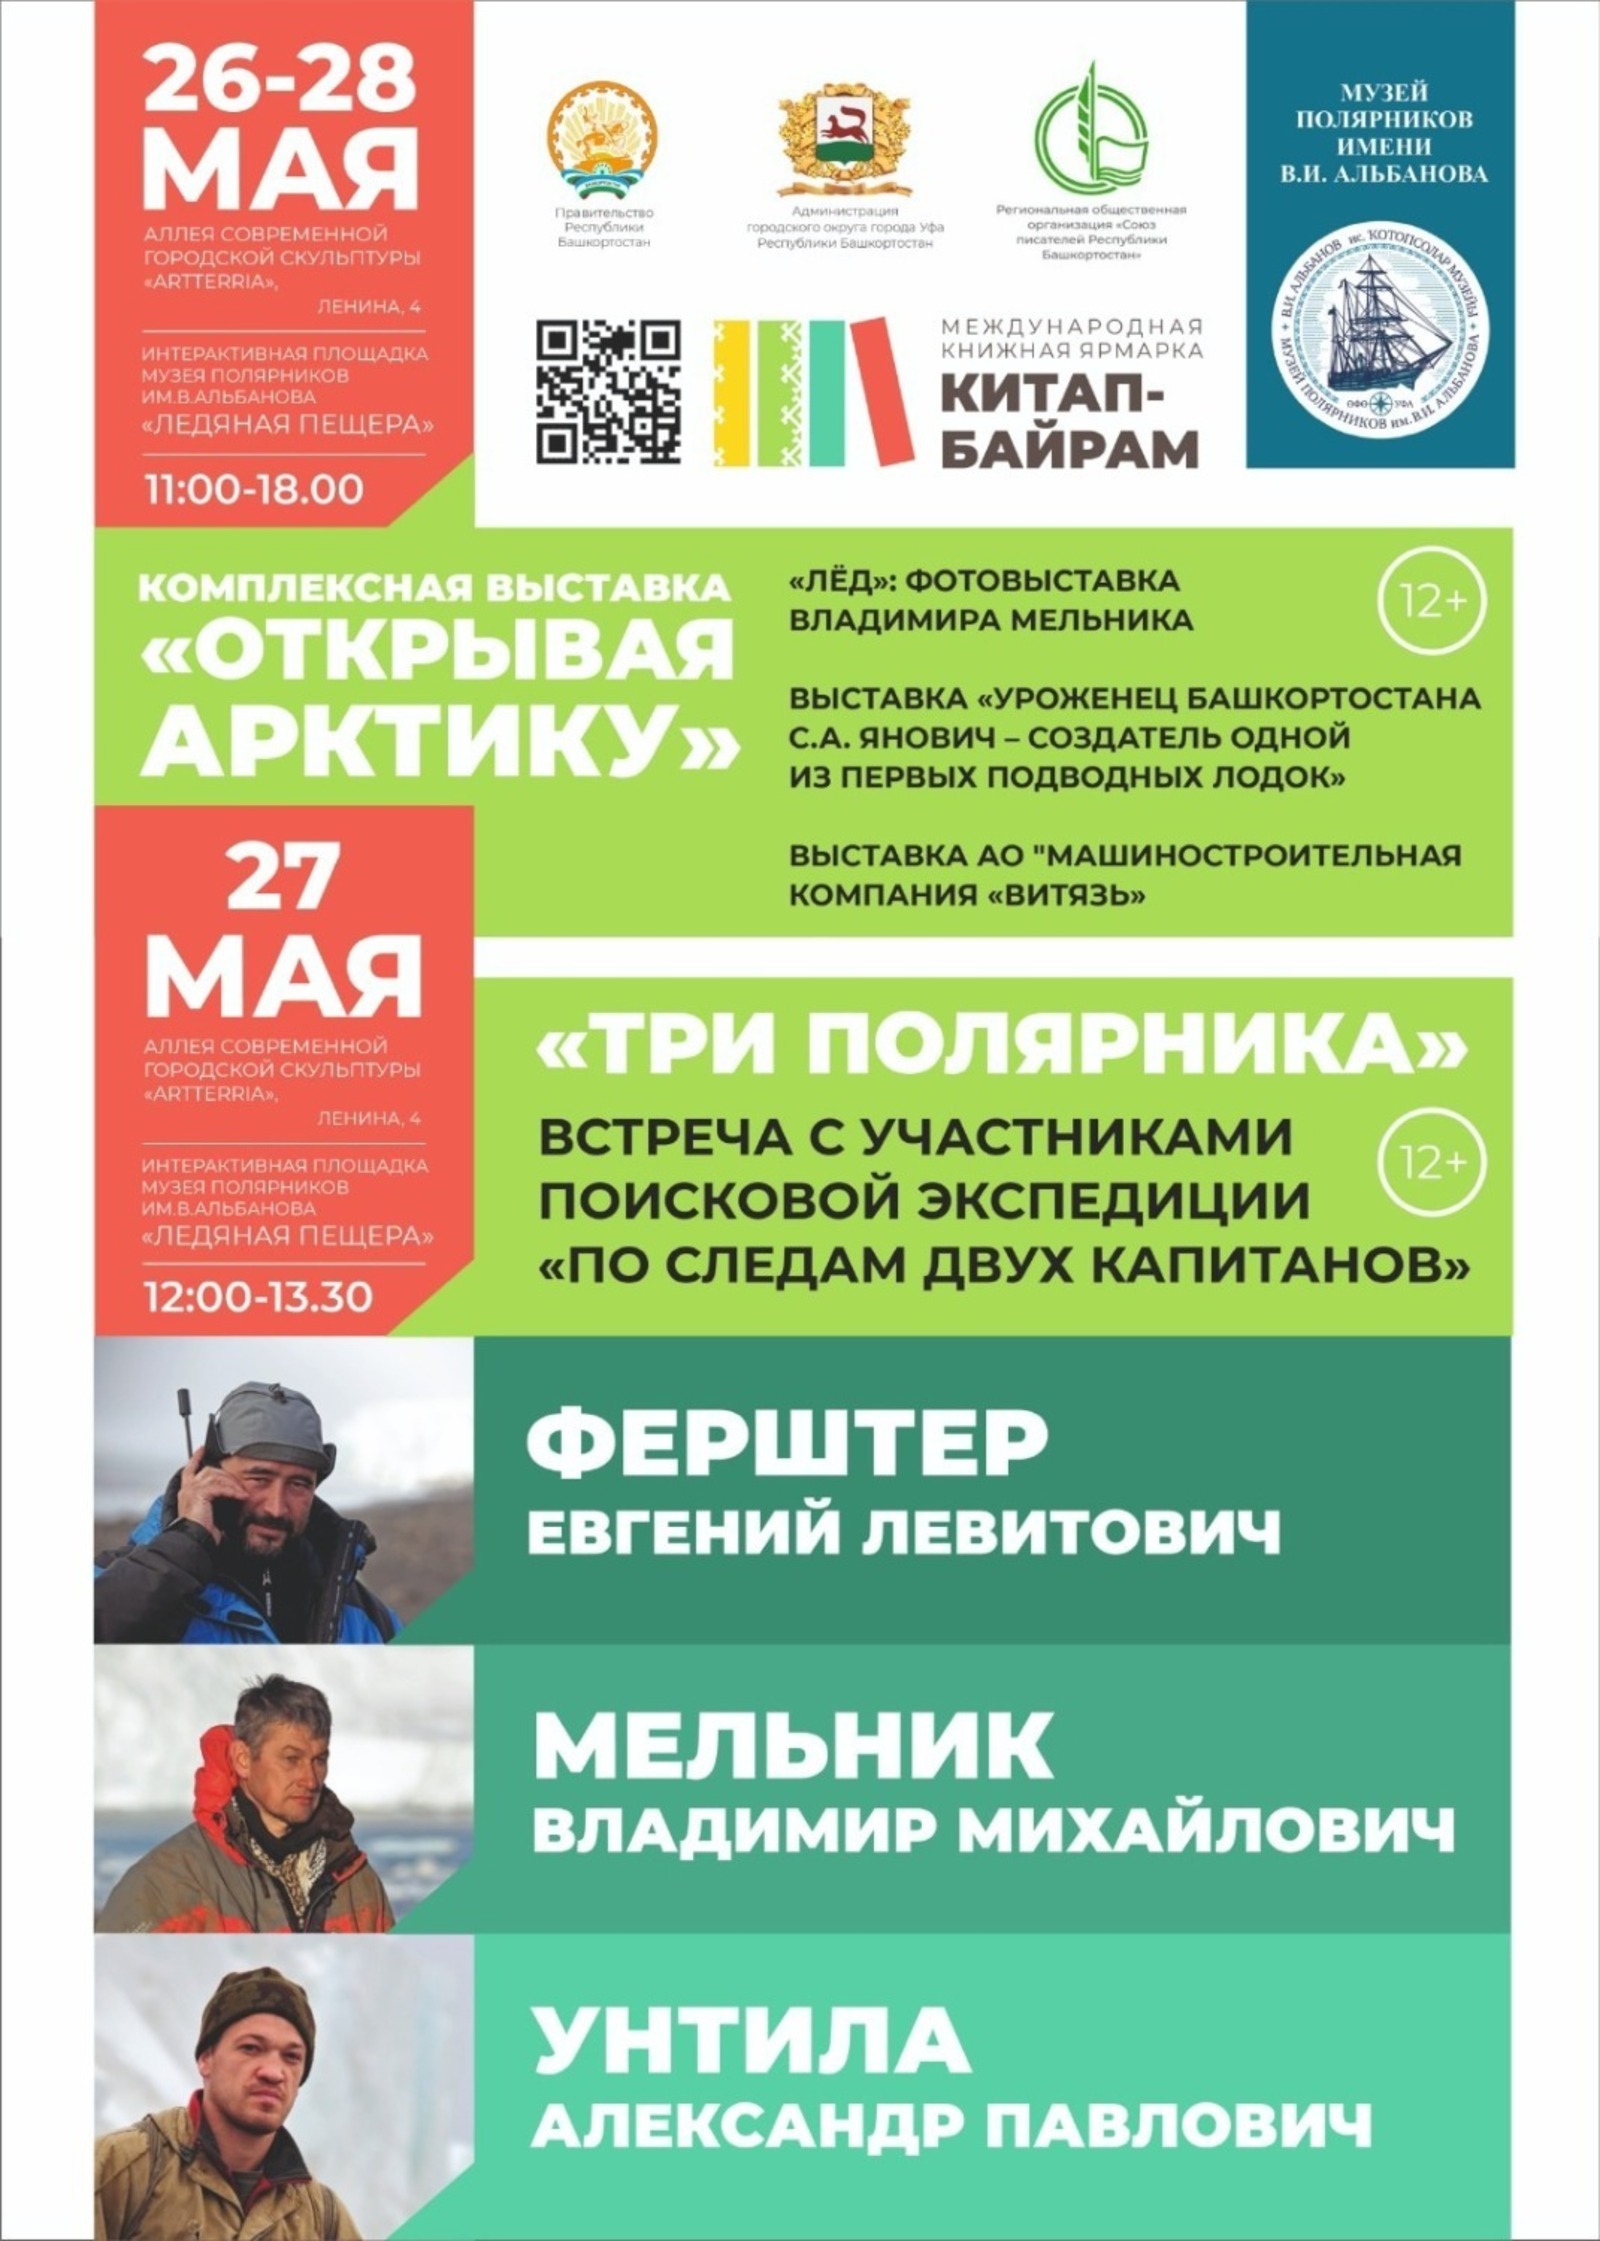 В Башкирии на международной книжной ярмарке состоится встреча с участниками экспедиции «По следам двух капитанов»